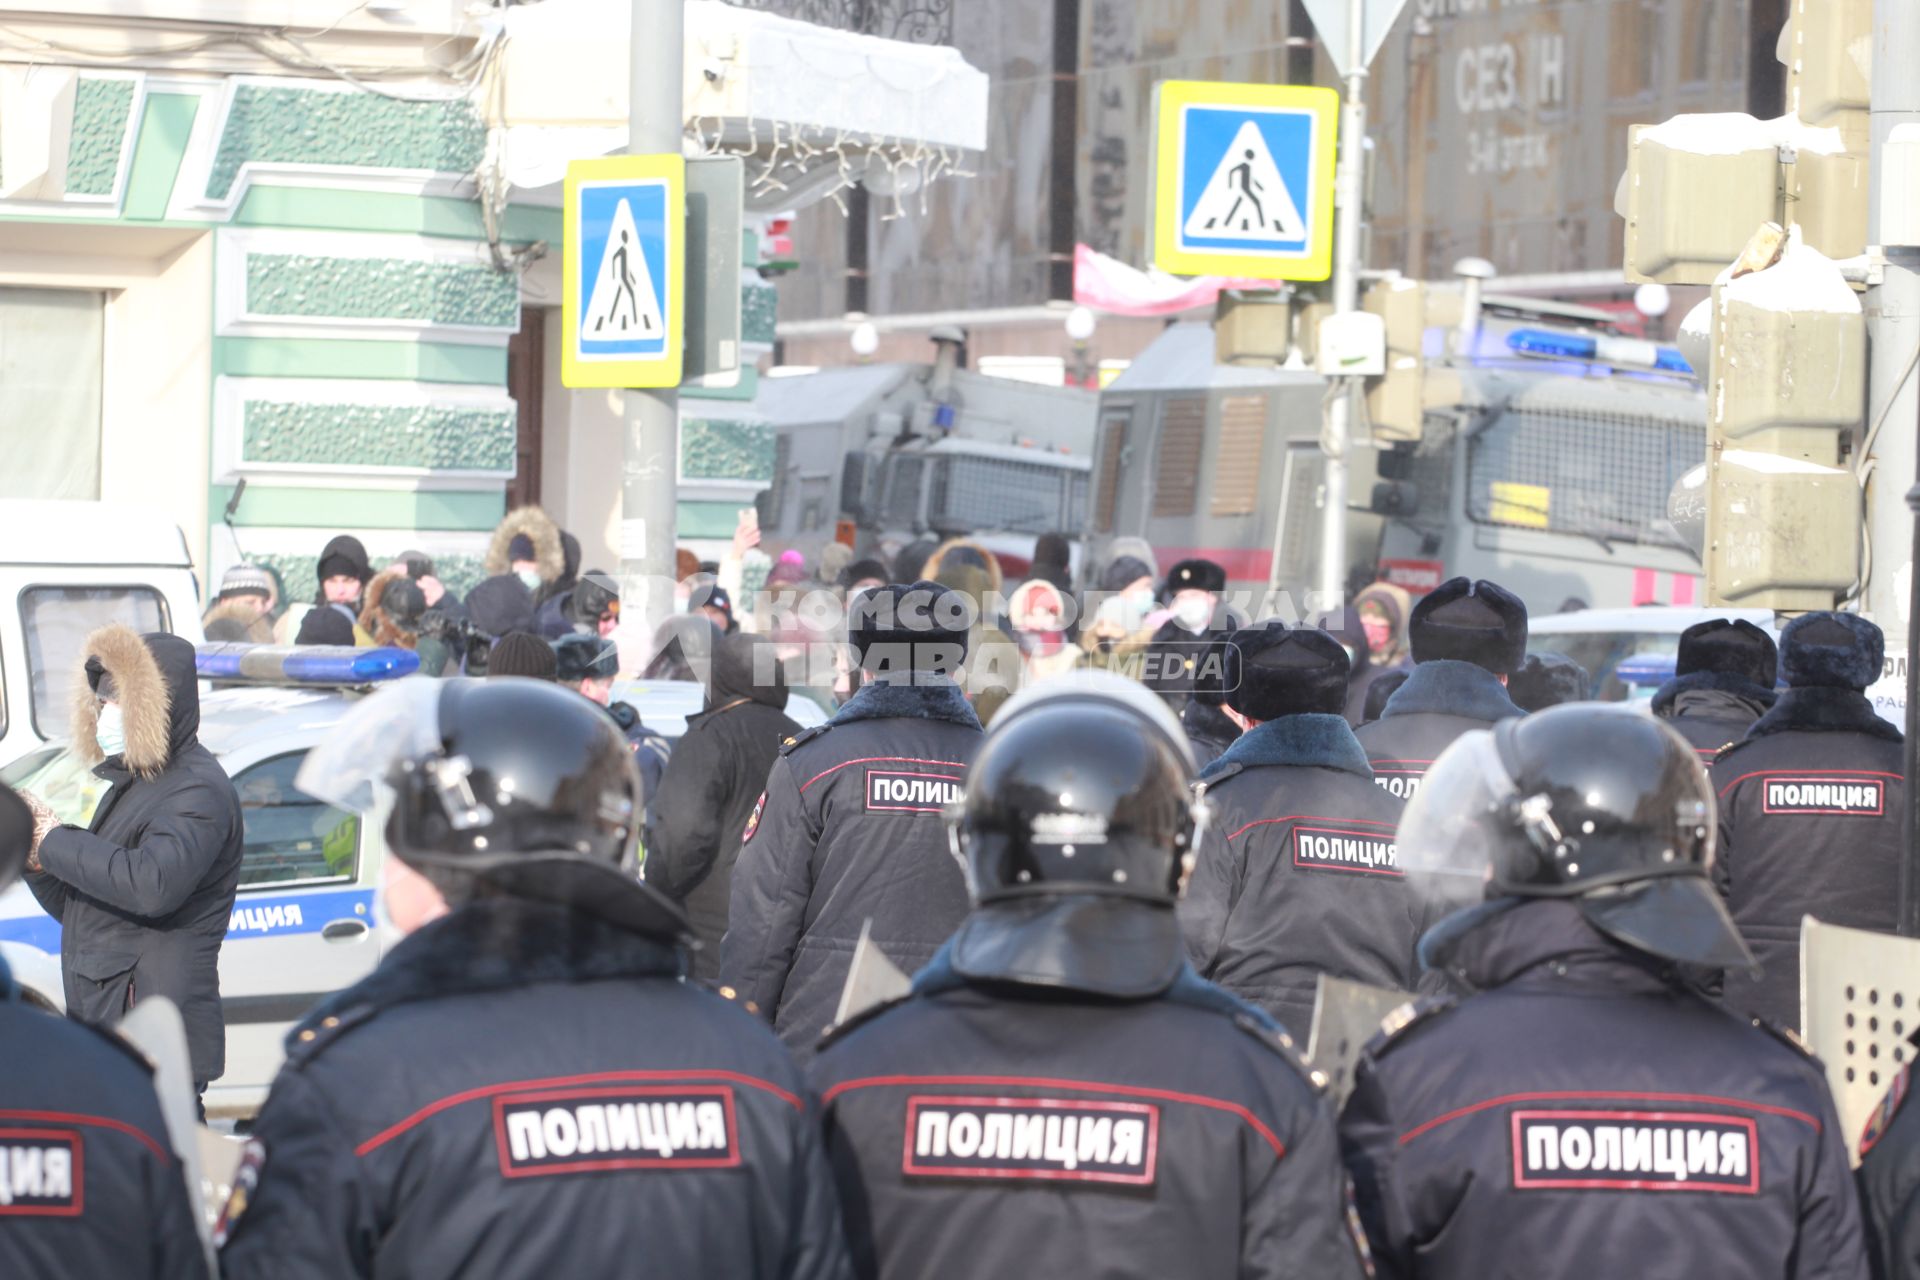 Иркутск. Сотрудники правоохранительных органов и участники несанкционированной акции в поддержку оппозиционера Алексея Навального.